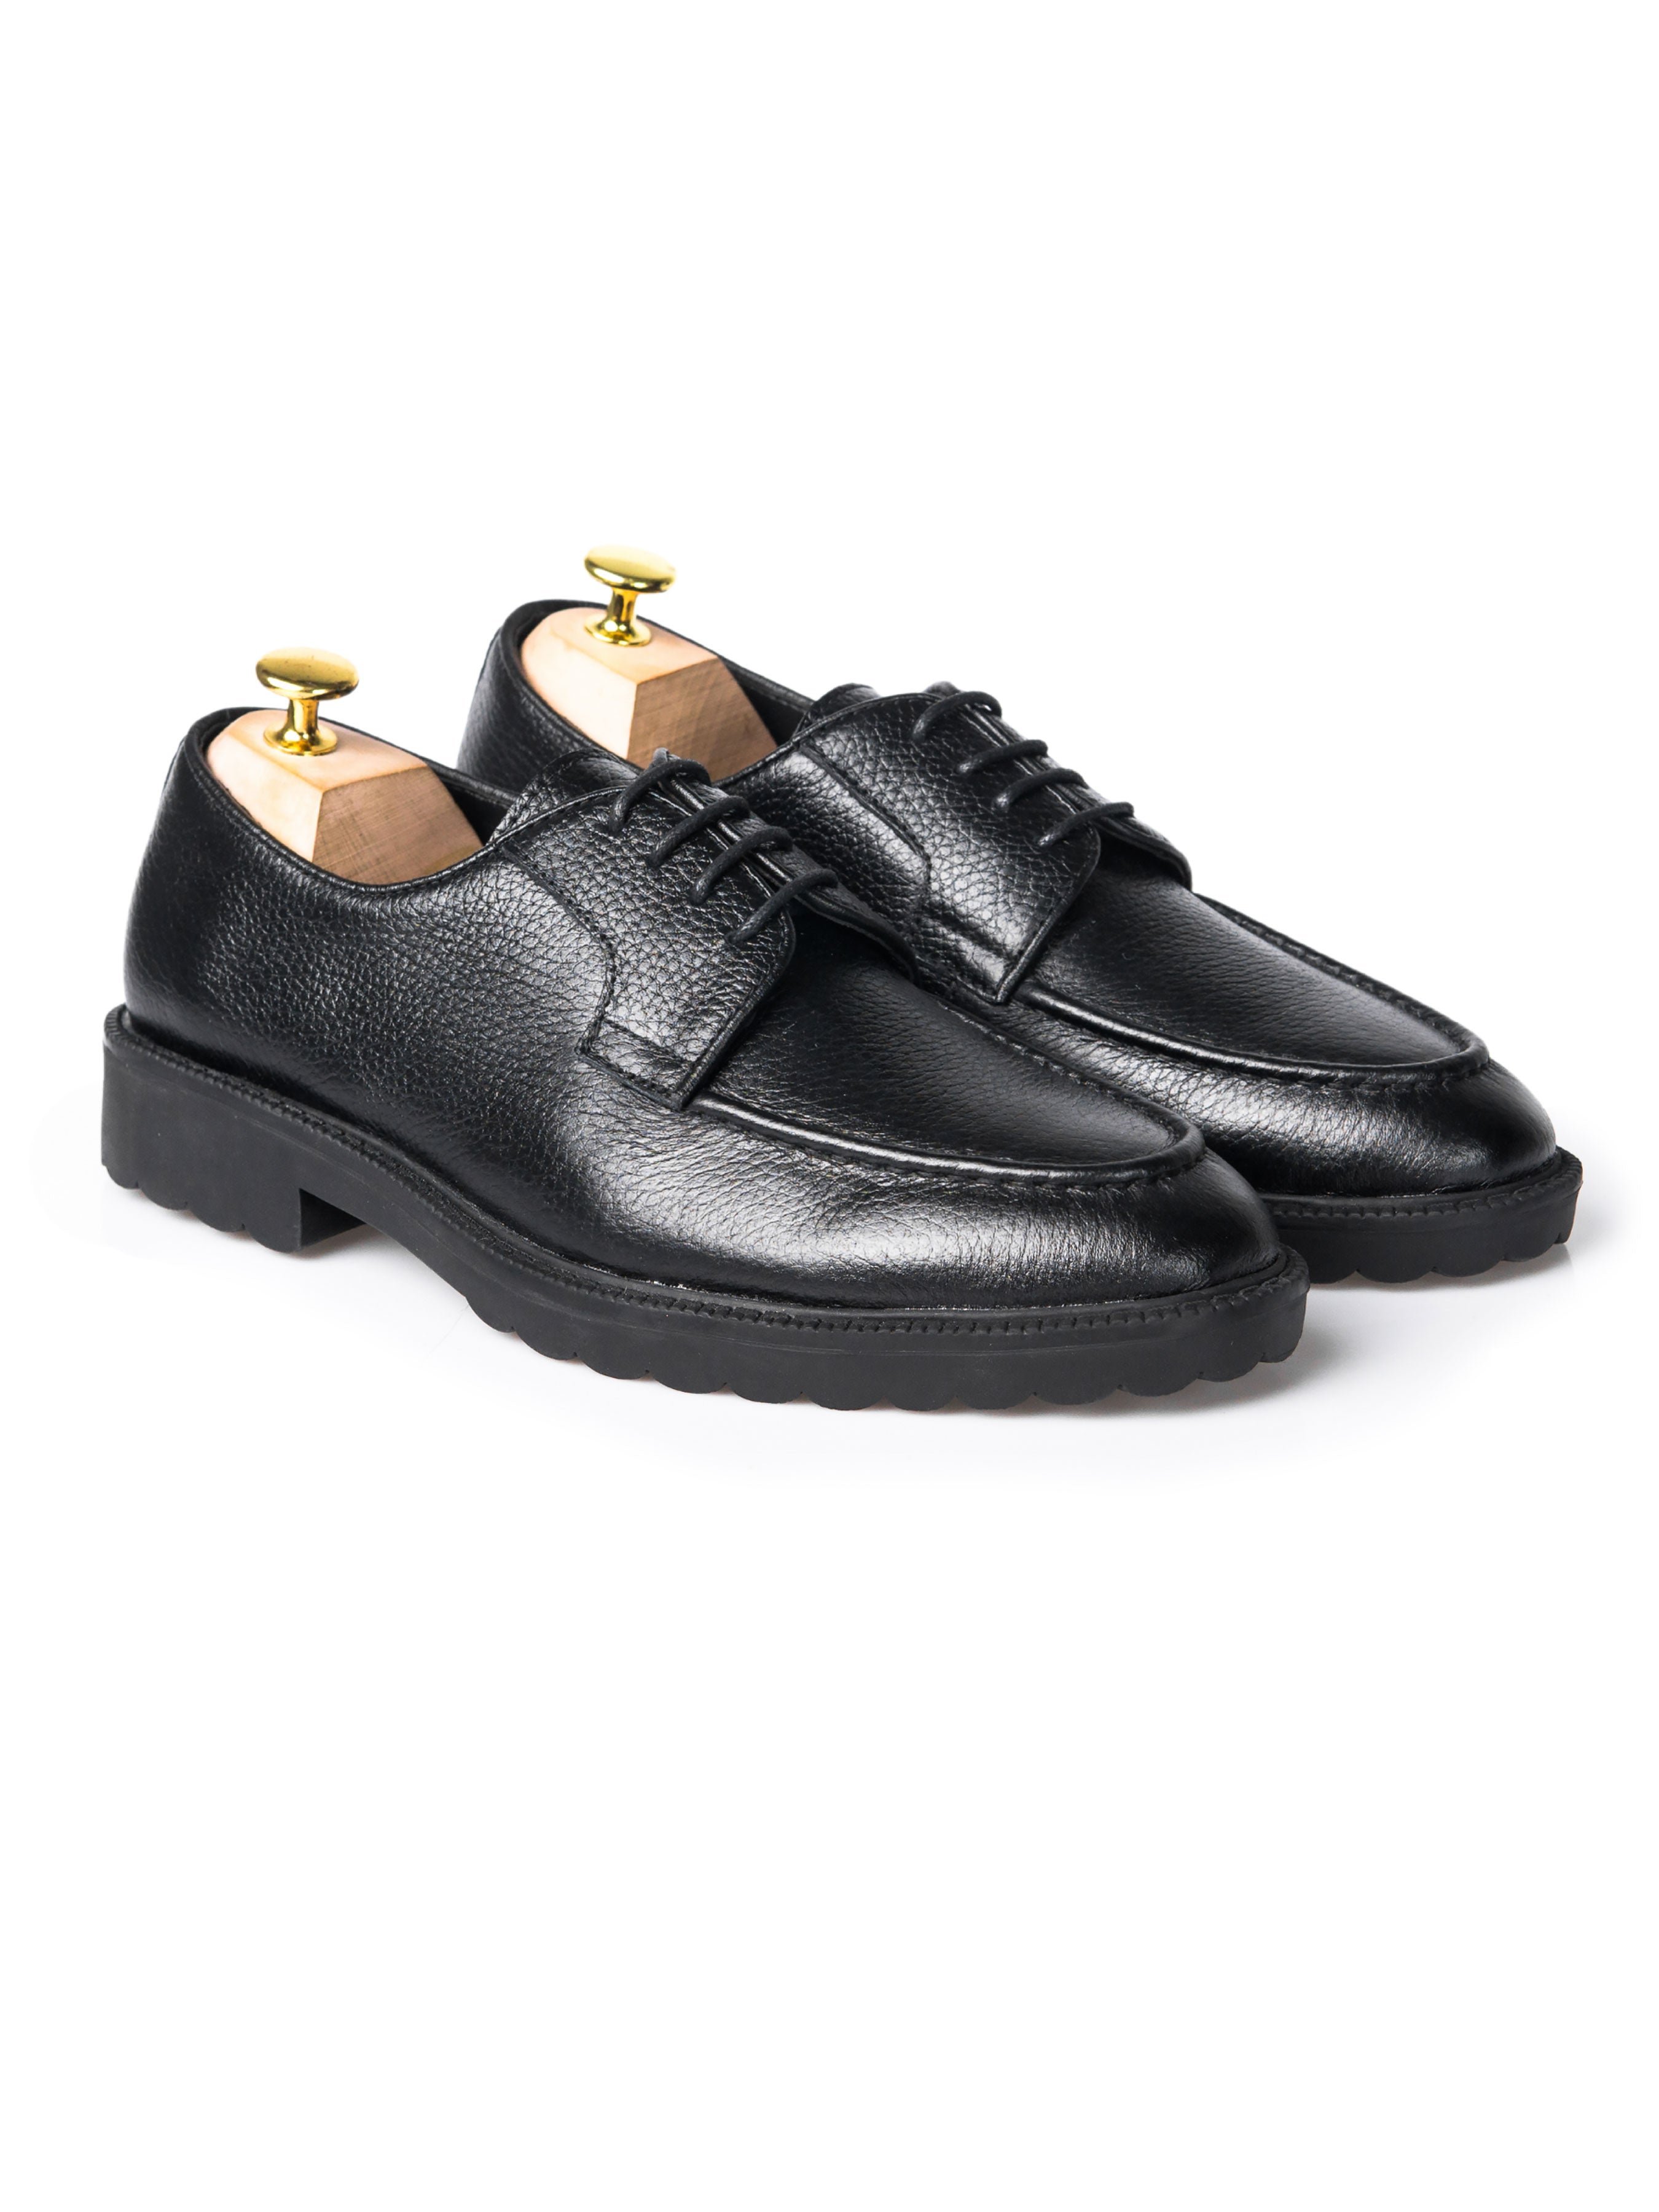 Blucher Lace Up - Black Pebble Grain Leather (Combat Sole) - Zeve Shoes